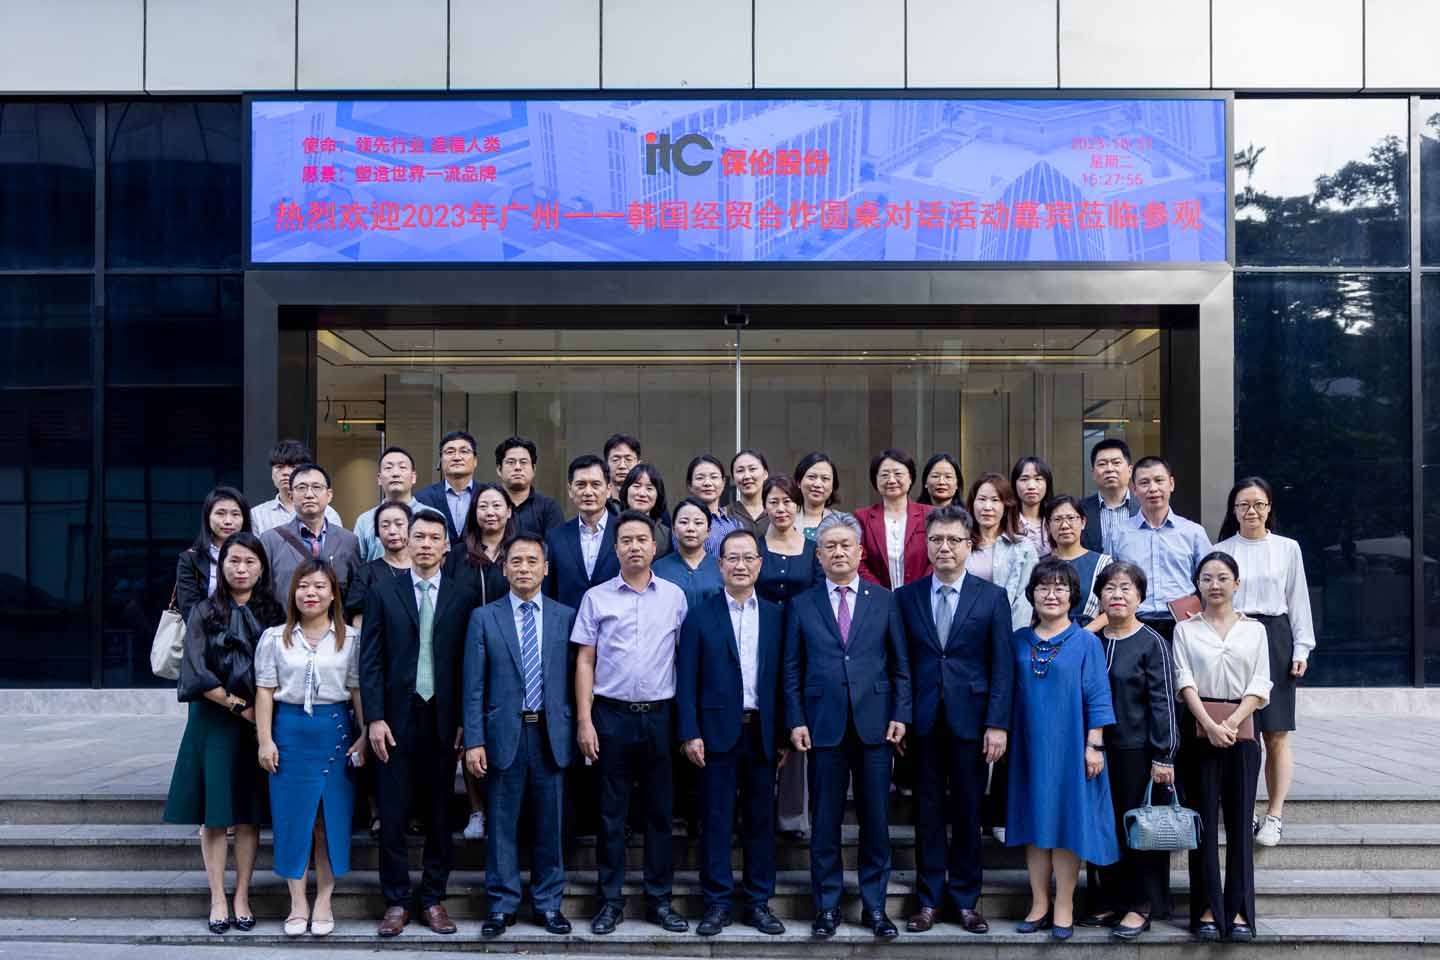 Bienvenida a la delegación de diálogo de mesa redonda Guangzhou-Corea en el CCI